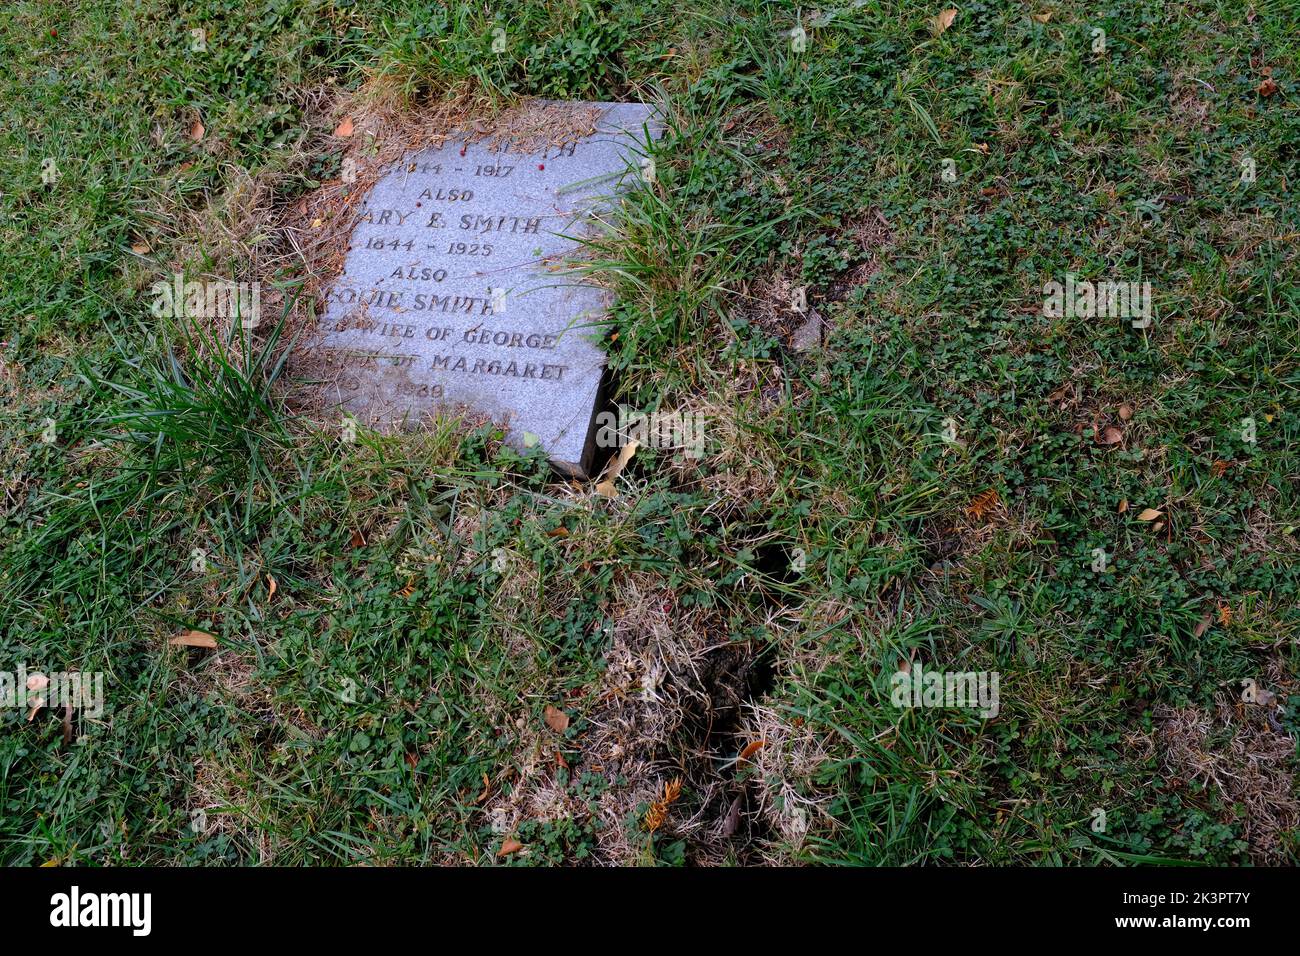 Una lápida, lápida que muestra agrietamiento del suelo debido al clima caliente del Reino Unido. Foto de stock